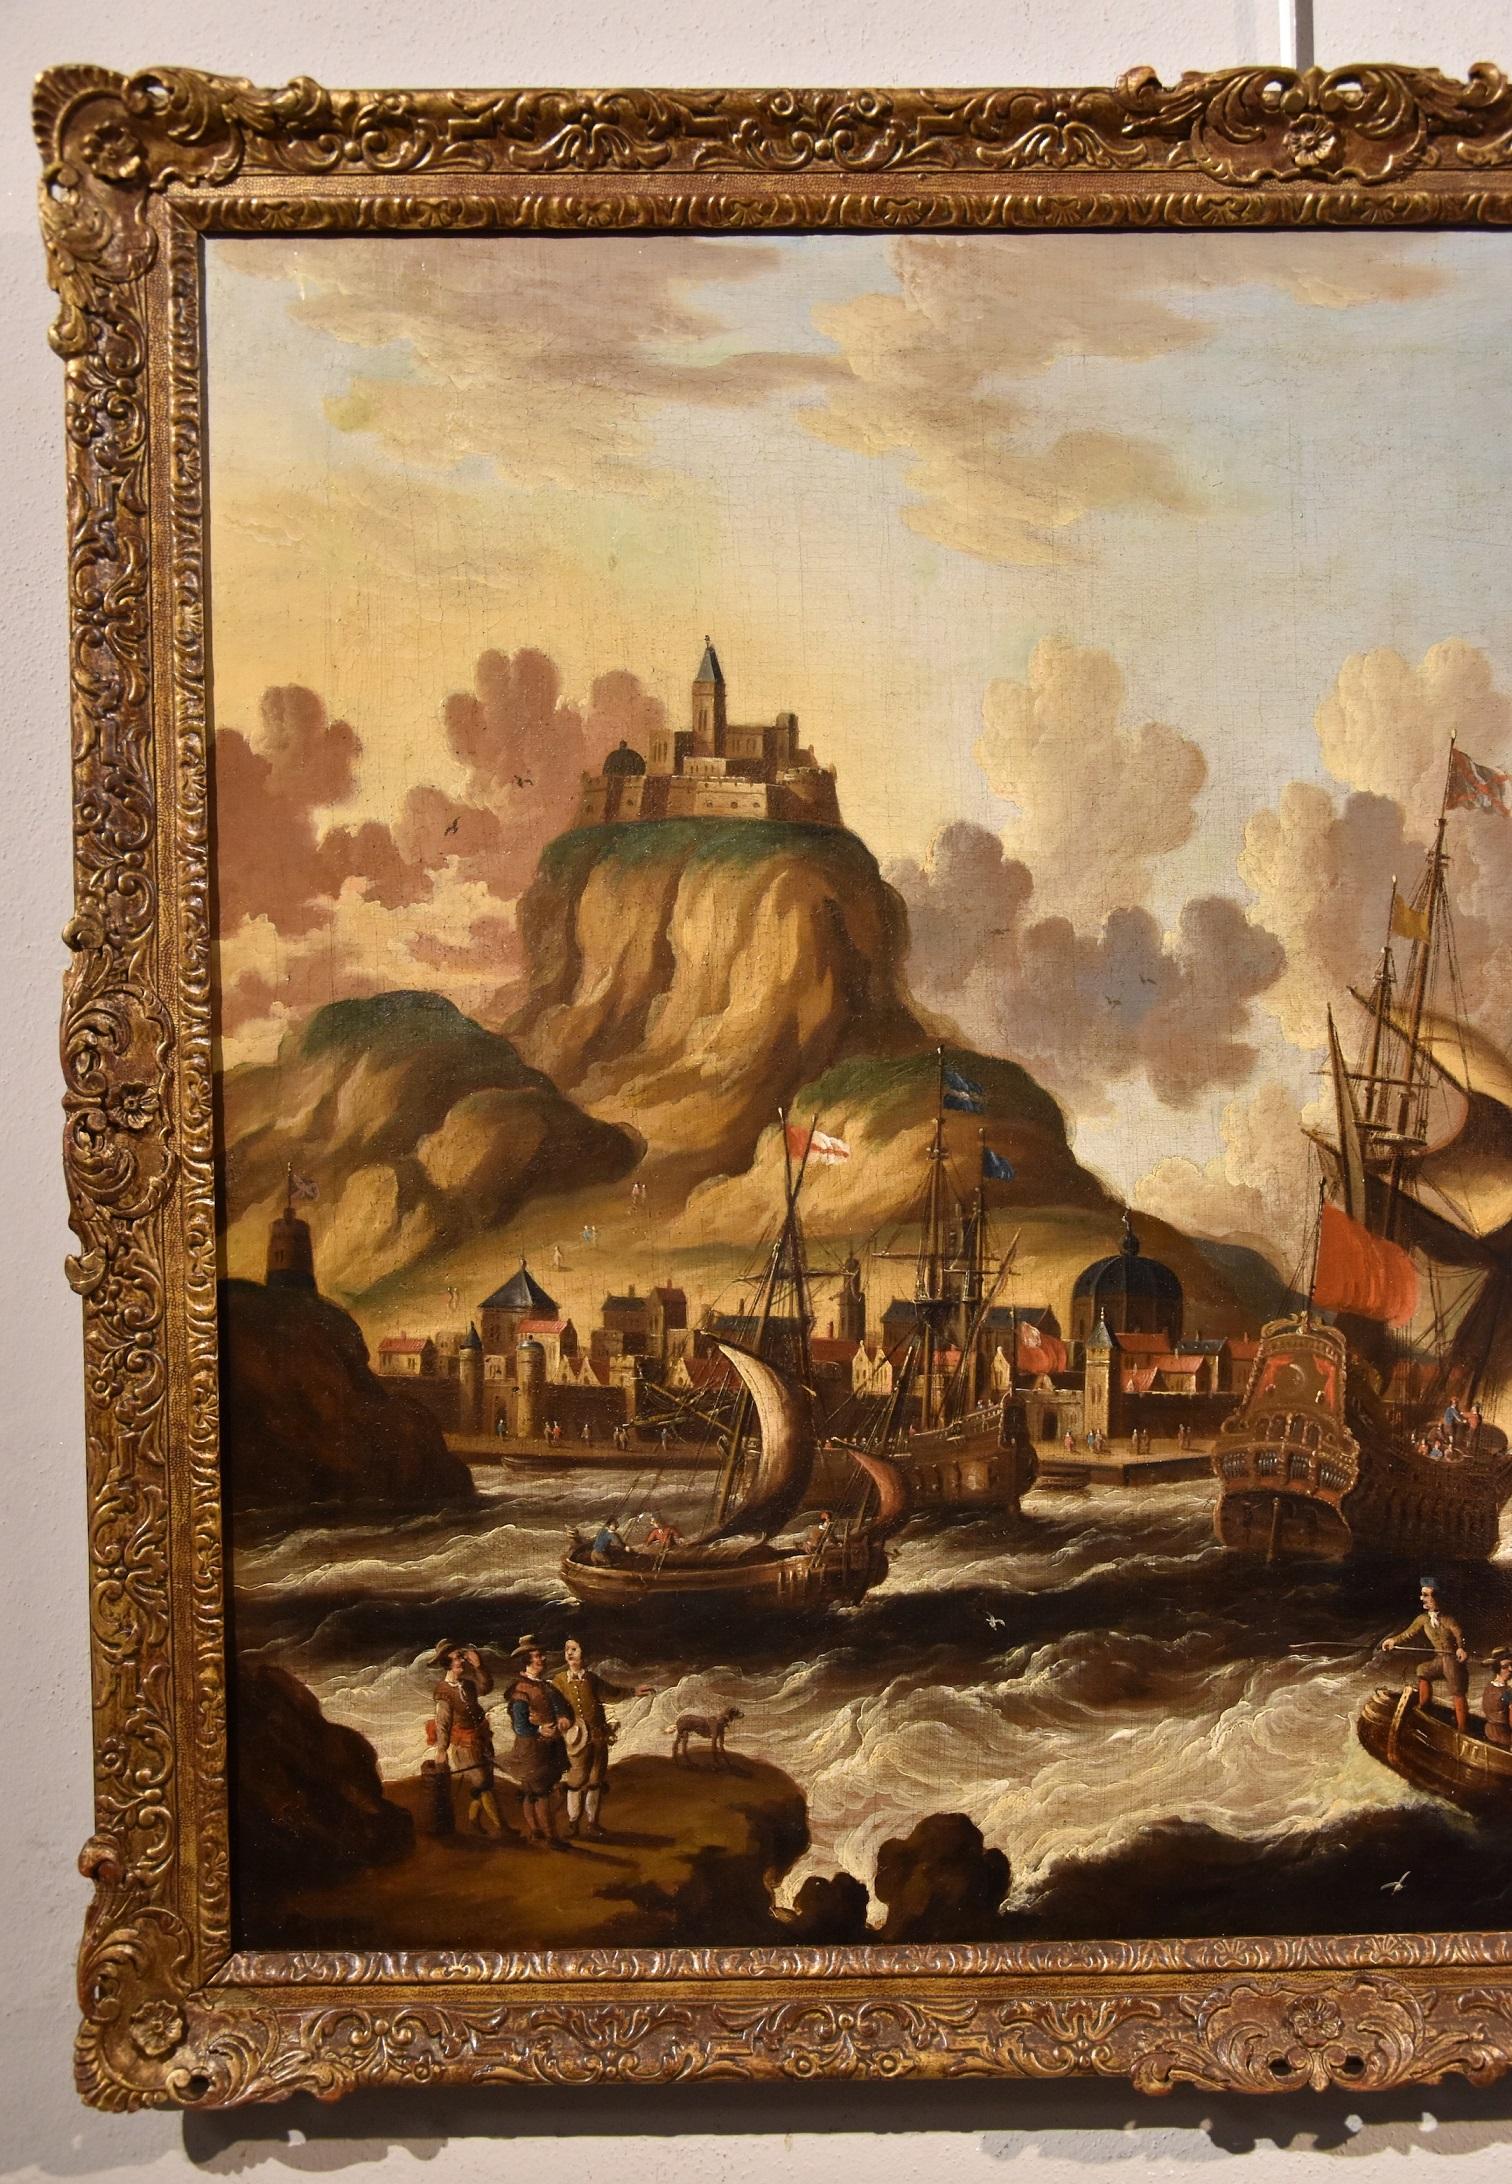 Qualitätsarbeit, die dem Maler Peter Van Der Velde (Antwerpen 1634 - ca. 1714) zugeschrieben wird - Monogrammiert
Blick auf die Küste mit Schiffen und Burgruine

Ölgemälde auf Leinwand
70 x 87 cm - Im Rahmen 76 x 94 cm.
Das Werk wird begleitet von